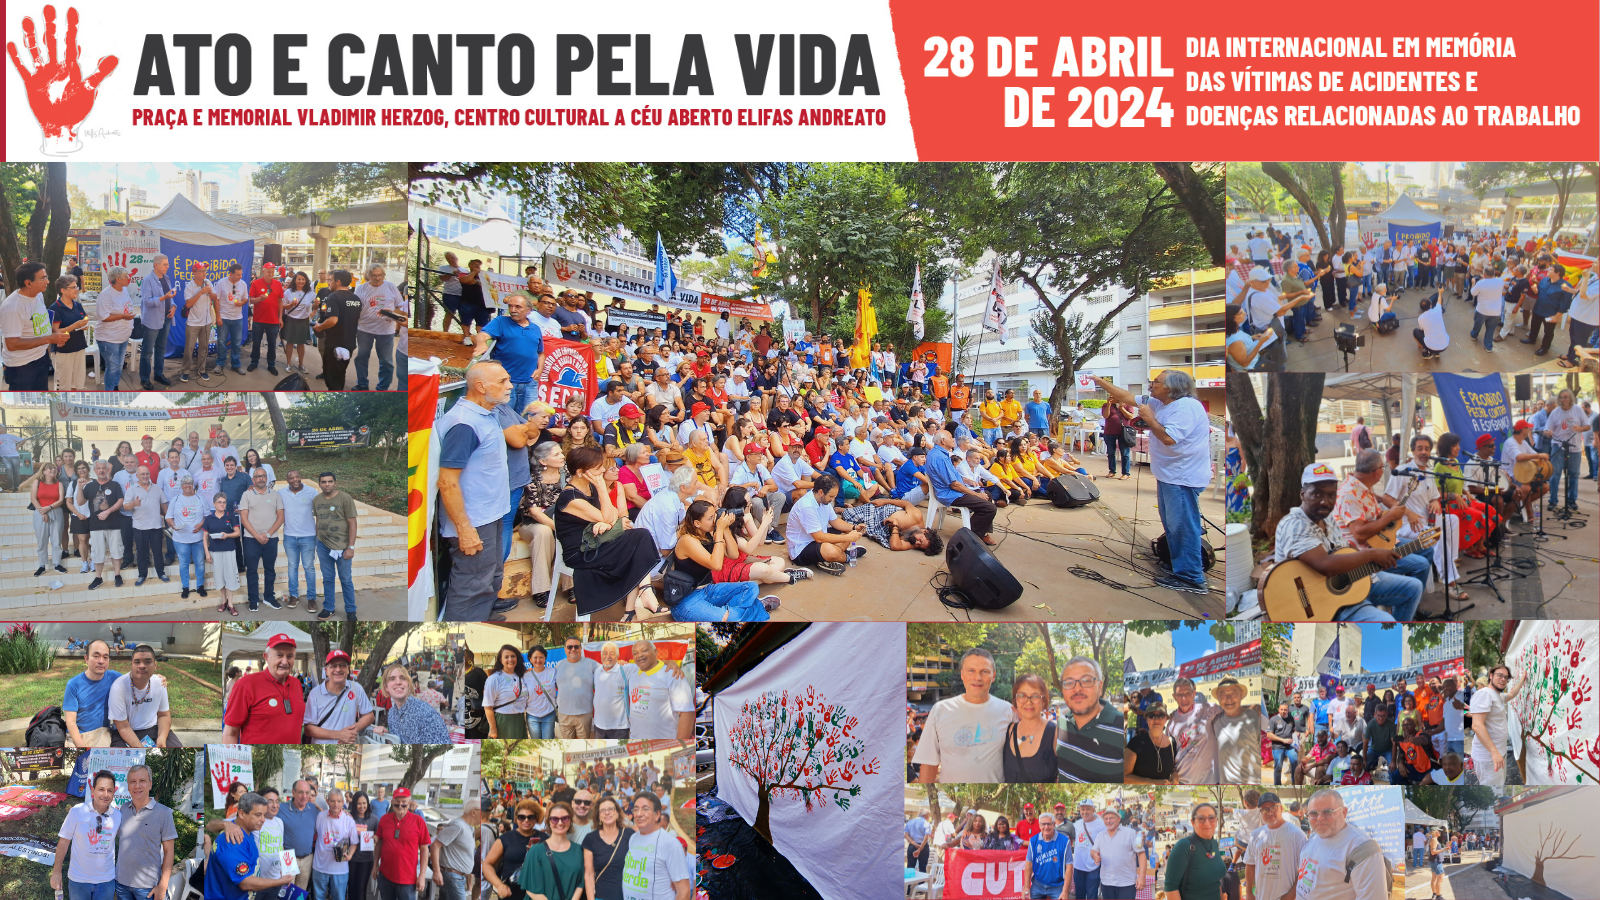 Evento foi realizado em São Paulo/SP no Dia Internacional em Memória dos Acidentes e Doenças Relacionadas ao Trabalho